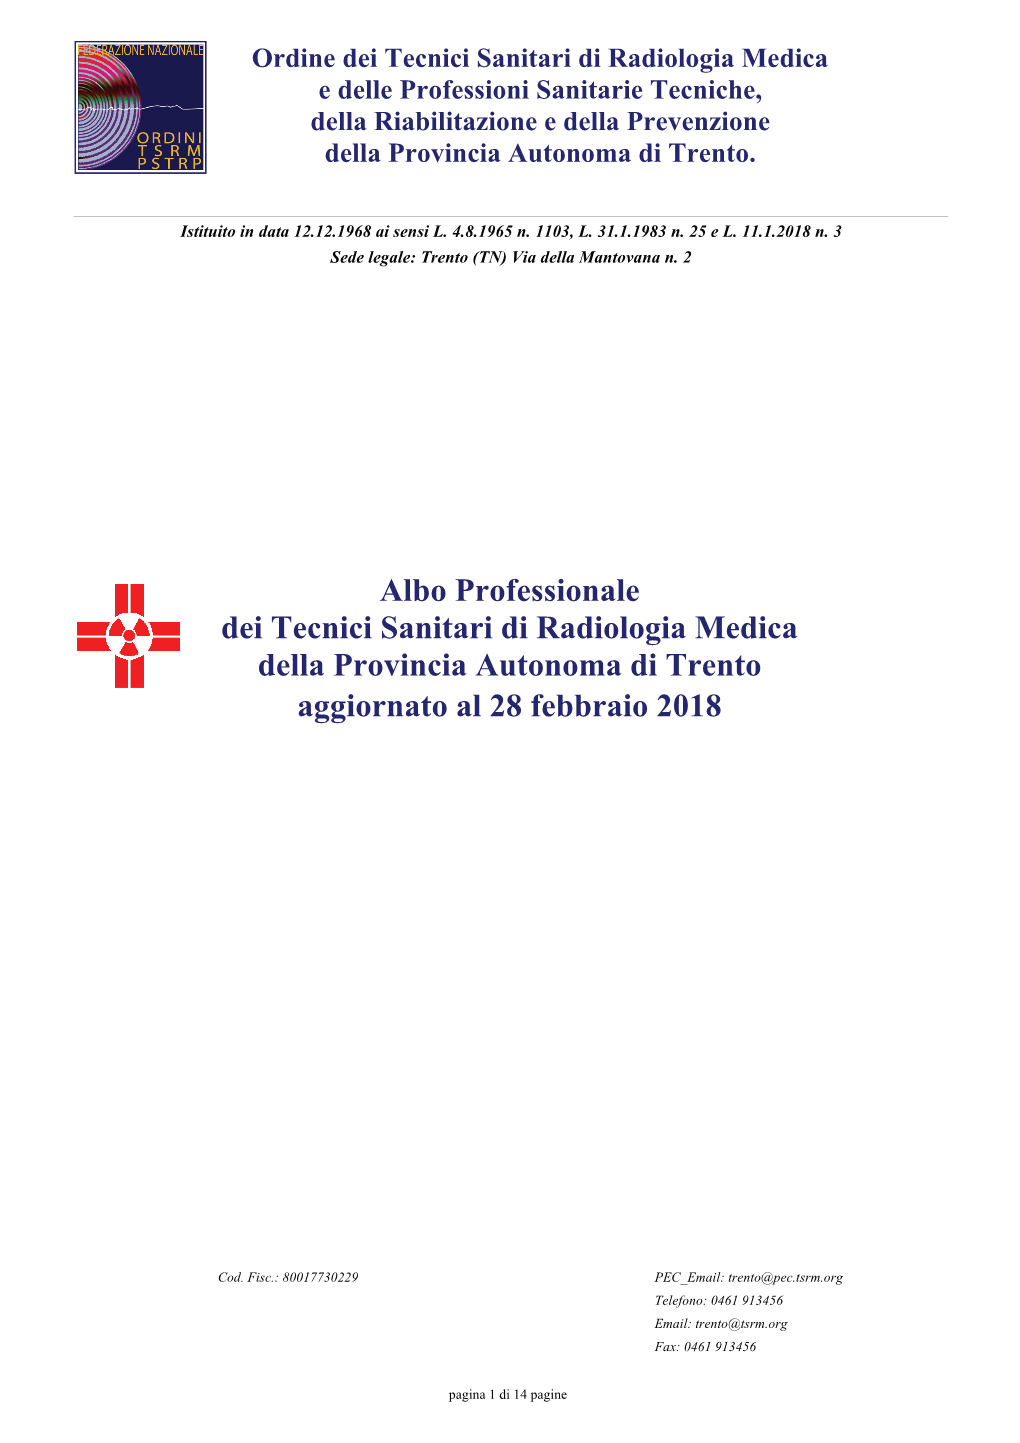 Albo Professionale Dei Tecnici Sanitari Di Radiologia Medica Della Provincia Autonoma Di Trento Aggiornato Al 28 Febbraio 2018